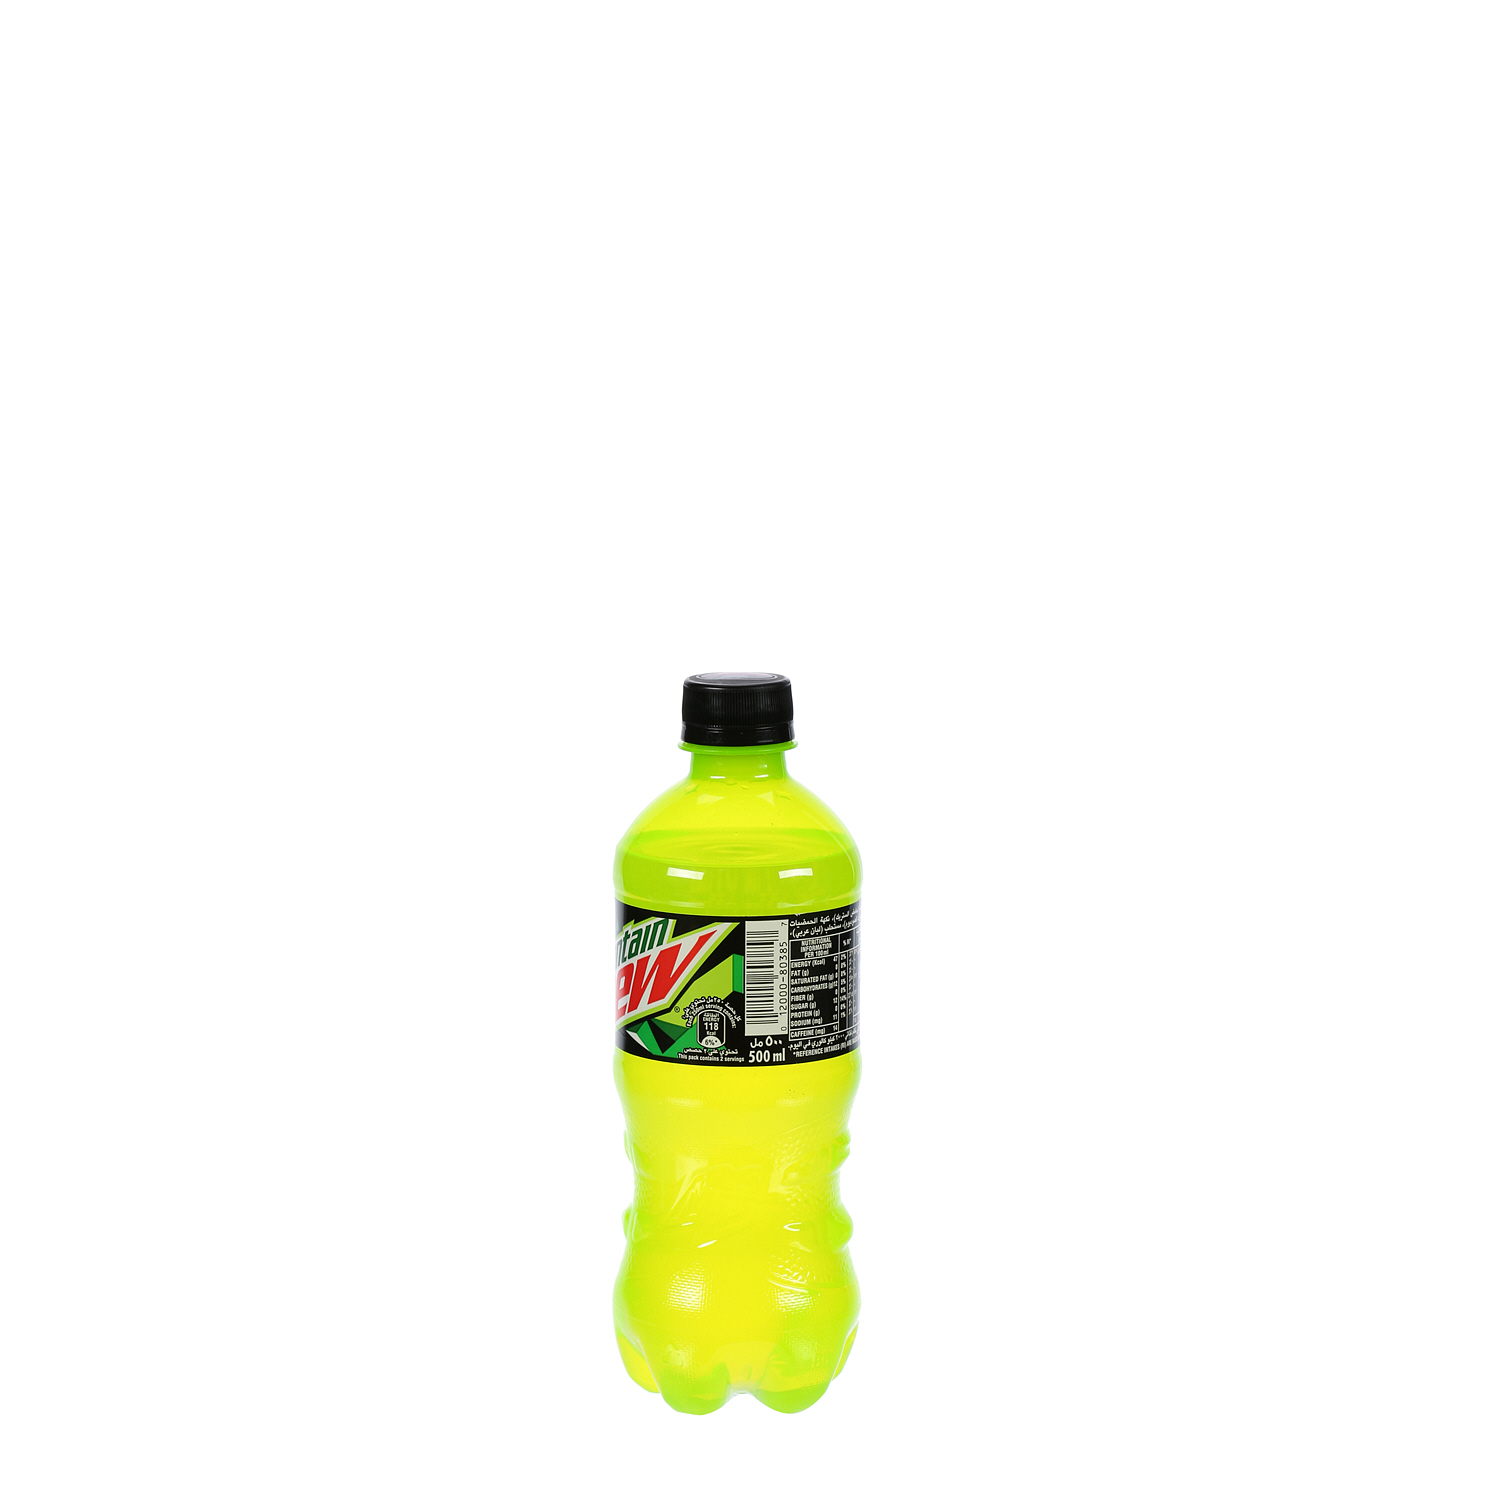 Mountain Dew Plastic Bottle 500ml